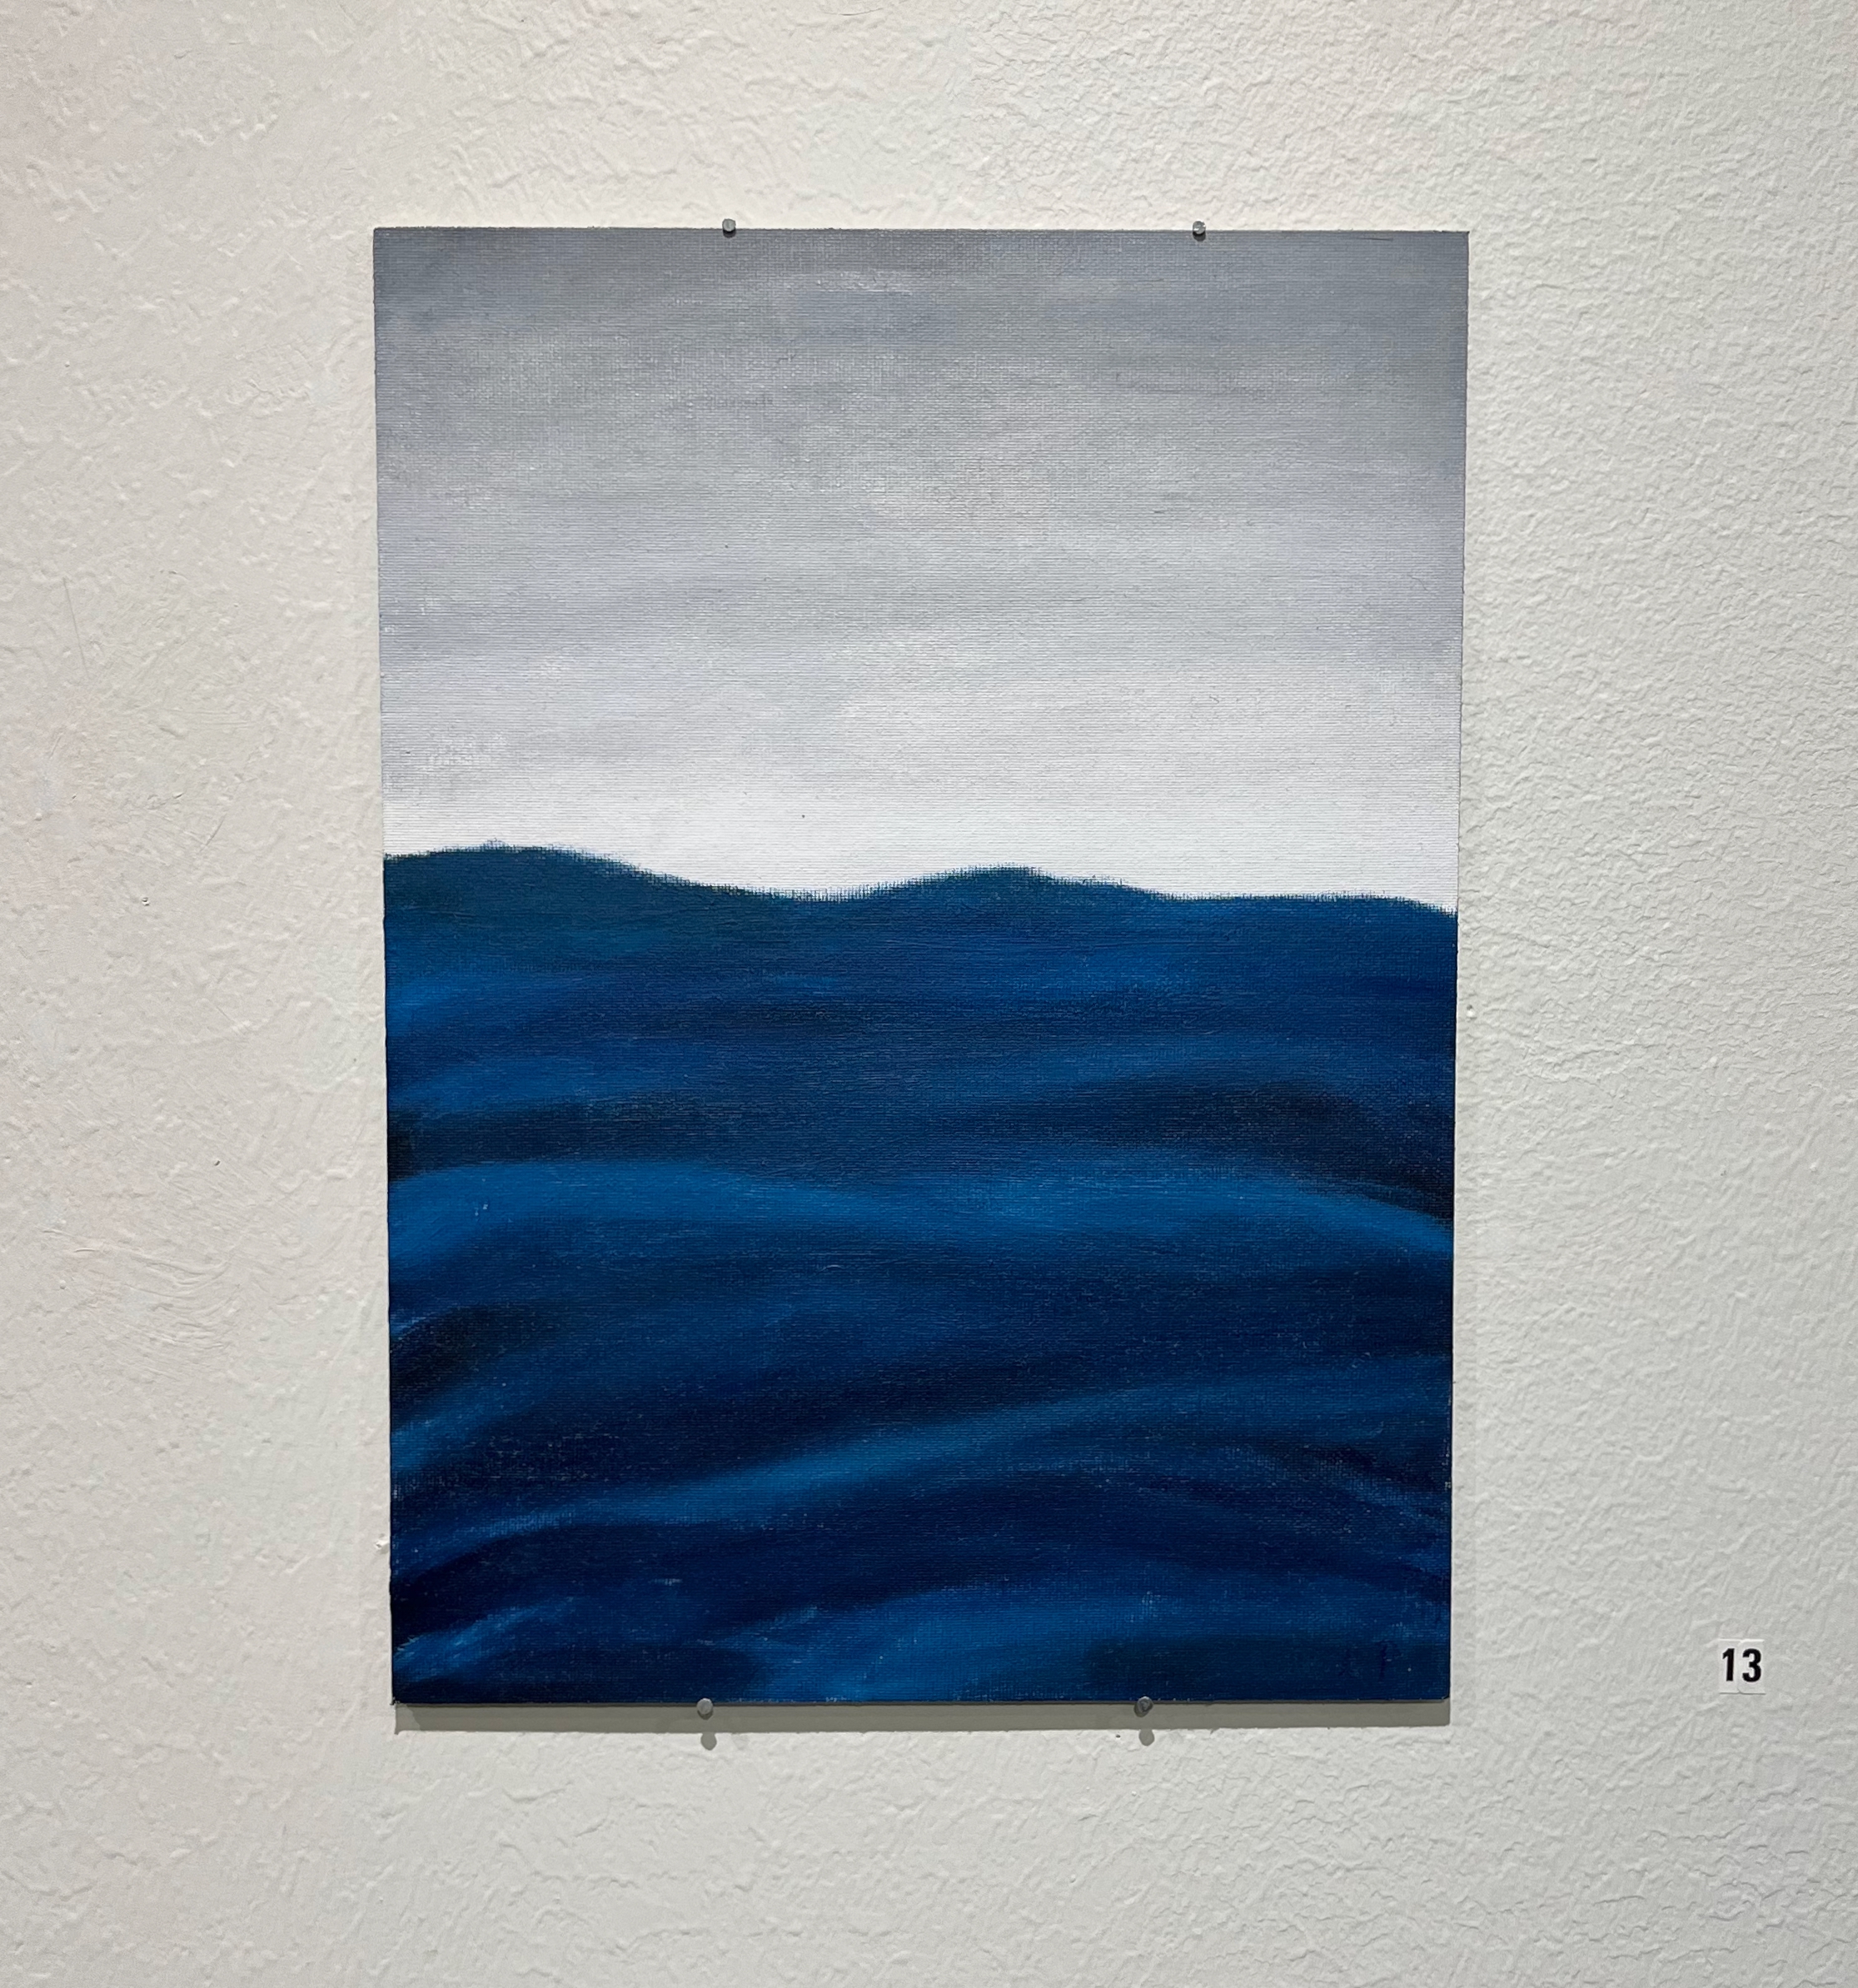 En abstrakt målning av vågig vatten och en grå himmel. Vattnet har olika djup mörkblåa nyanser. Vattnet är i rörelse, men på ett lugnt sätt. Horisonten är ljusgrå och skiftar till mörkare grå  högre upp.